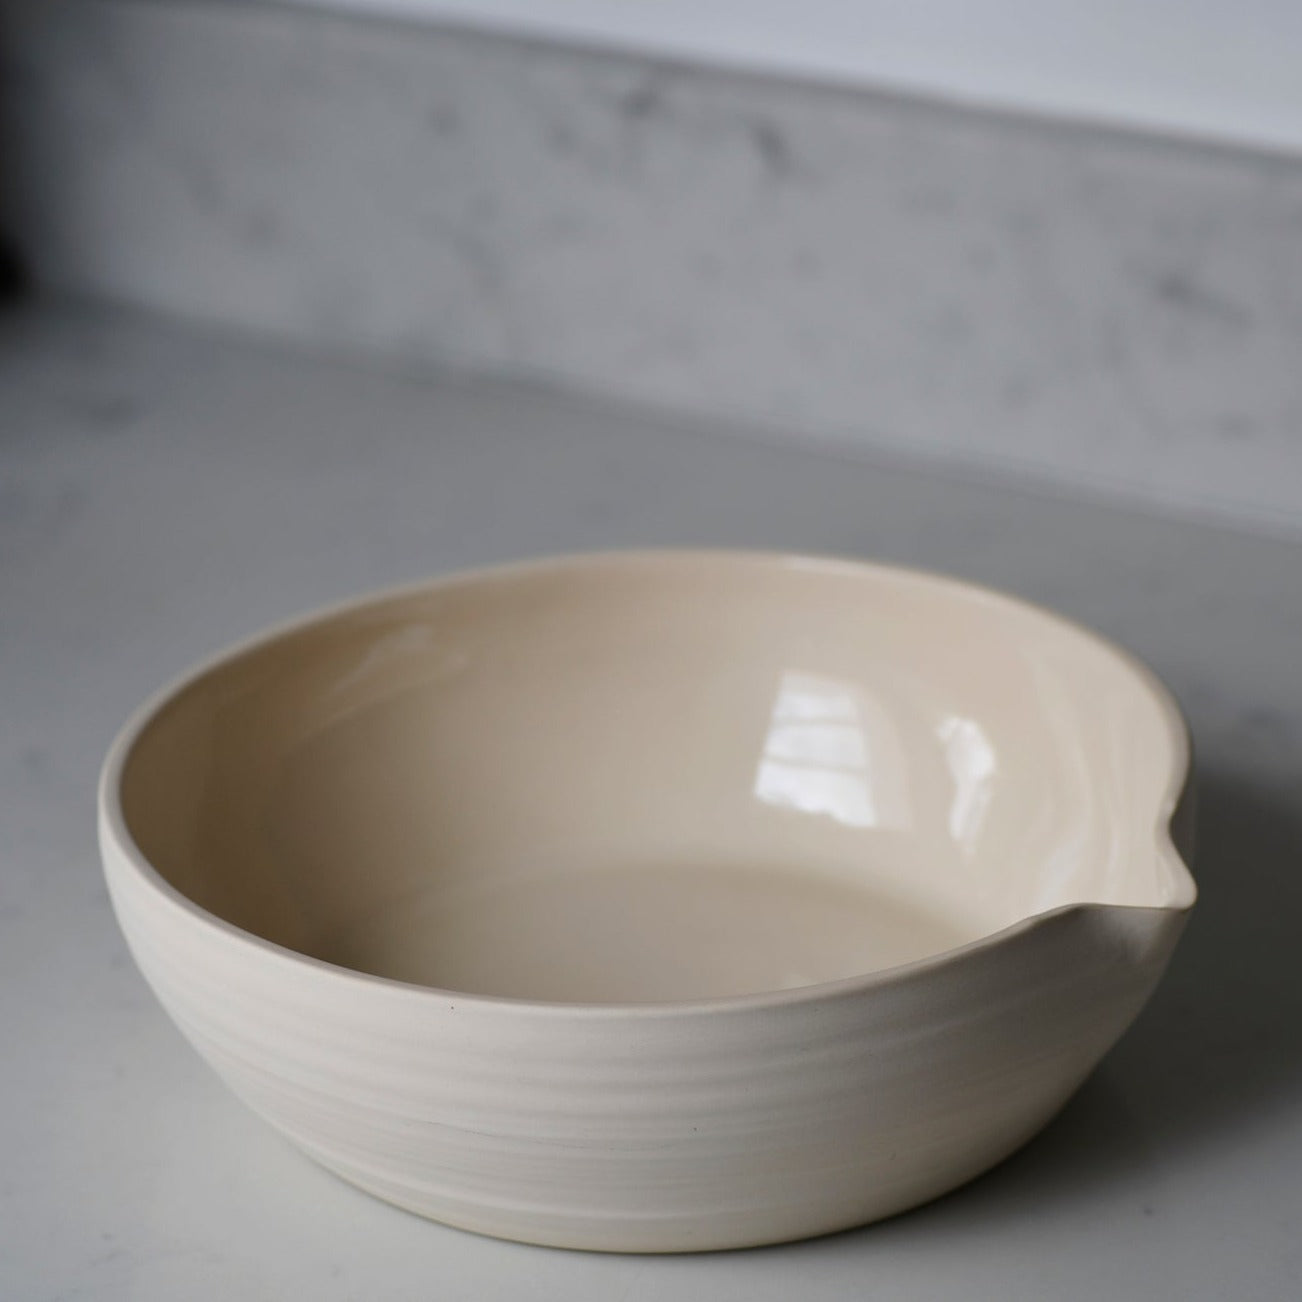 Handmade ceramic pouring bowl